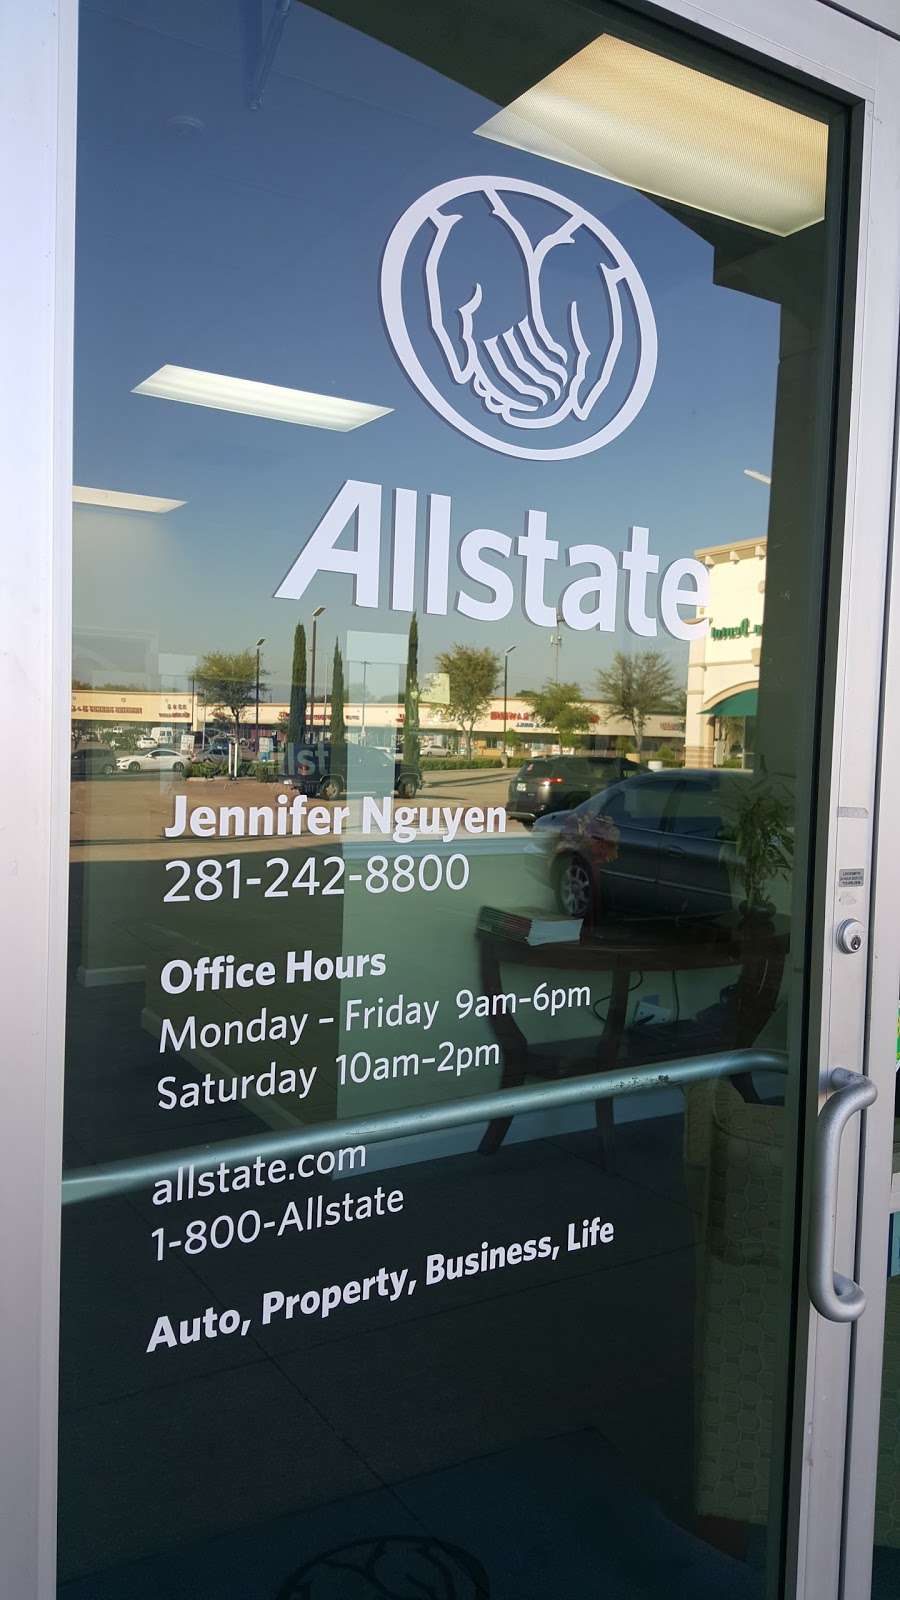 Jennifer Nguyen: Allstate Insurance | 10925 Beechnut St Ste B205, Houston, TX 77072 | Phone: (281) 242-8800